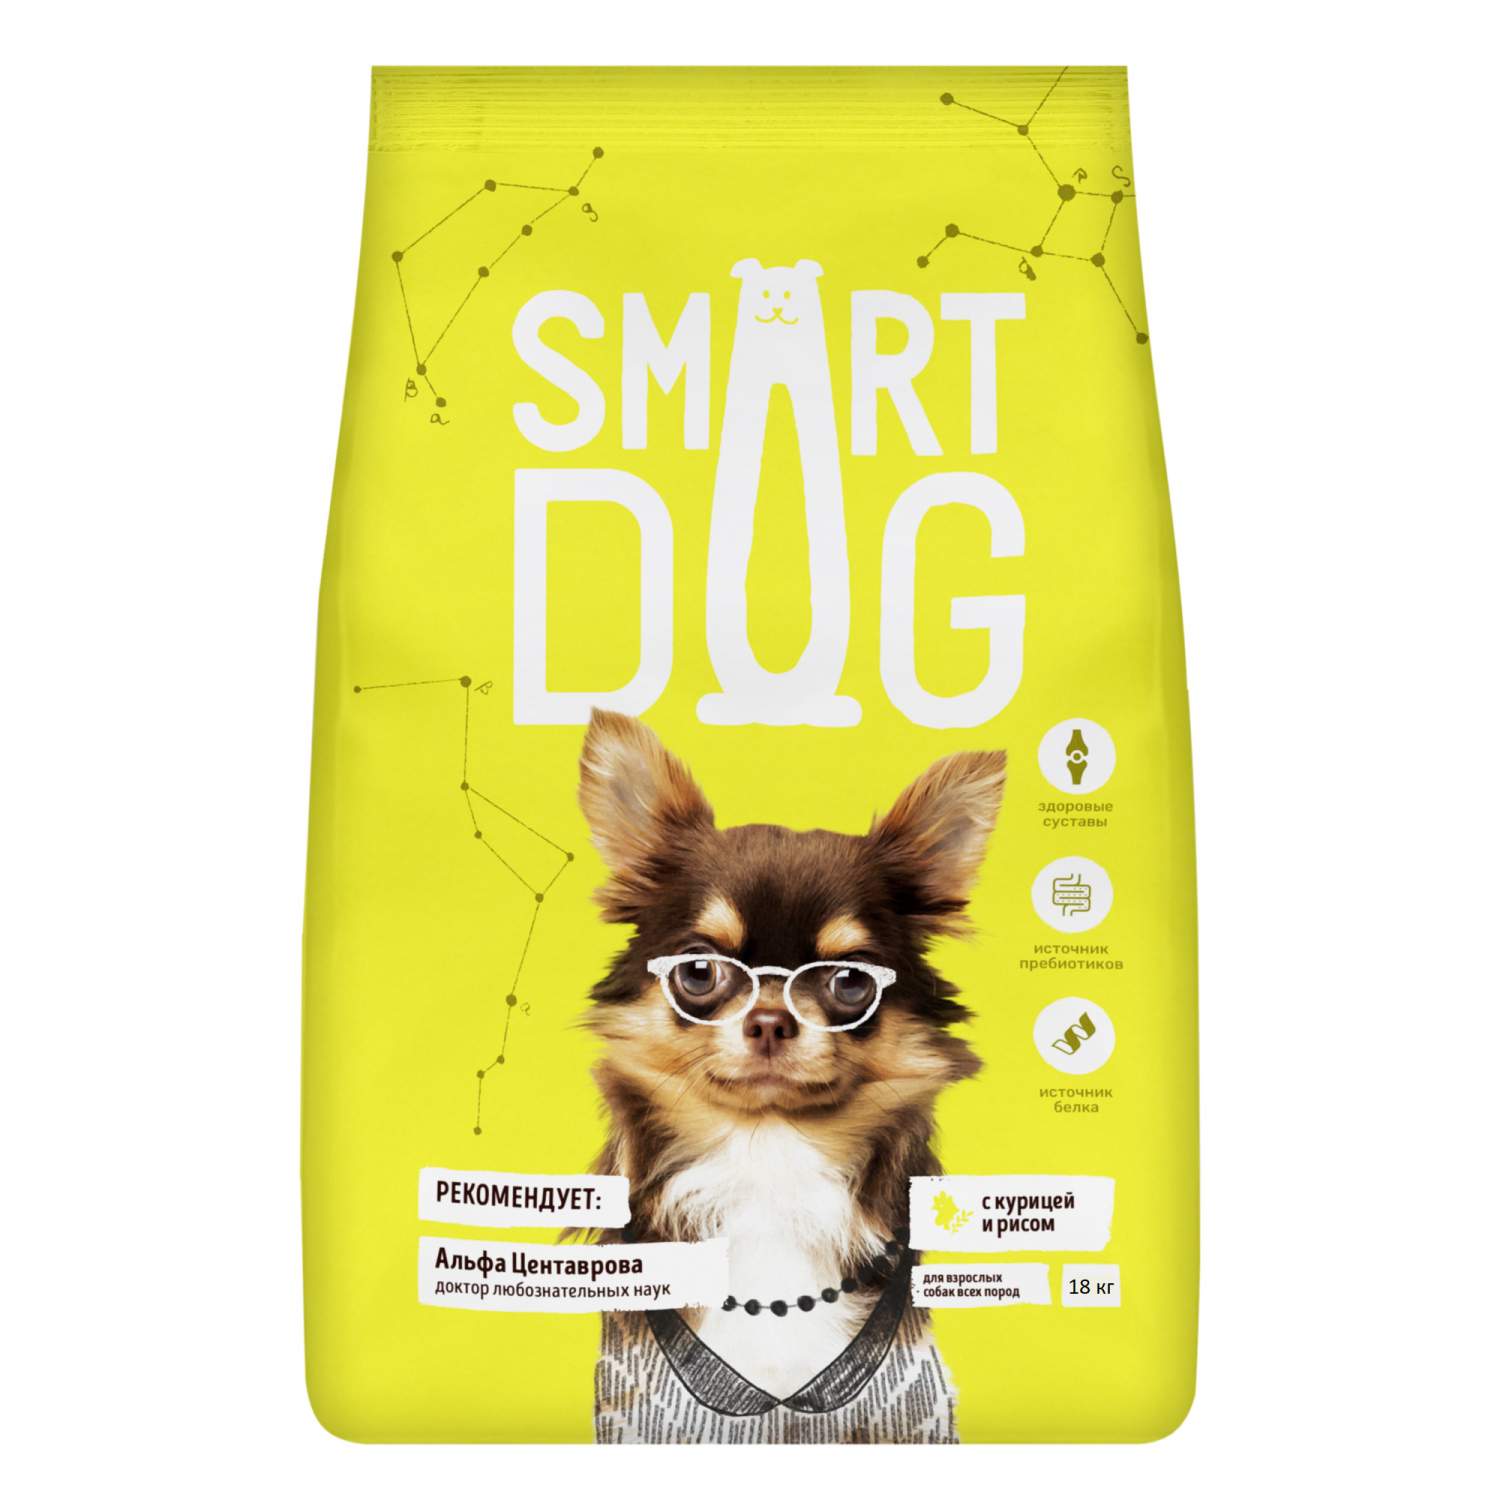 Сухие корма для собак Smart Dog - отзывы, рейтинг и оценки покупателей -  маркетплейс megamarket.ru